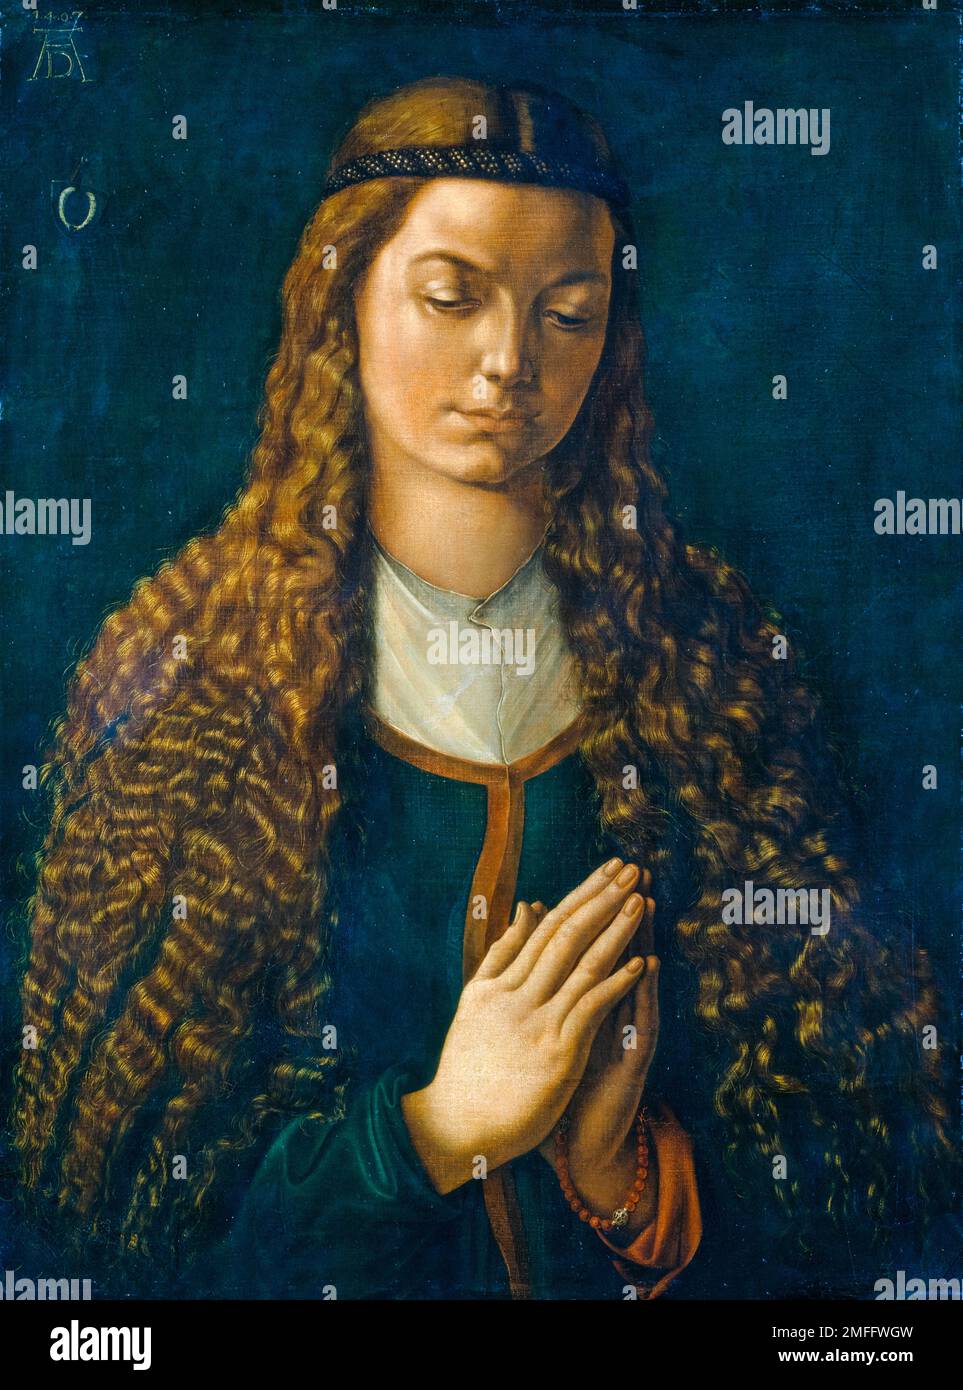 Albrecht Durer, Porträt einer jungen Frau mit ihrem Haar Daunen, malt in Aquarell auf Leinwand, 1497 Stockfoto